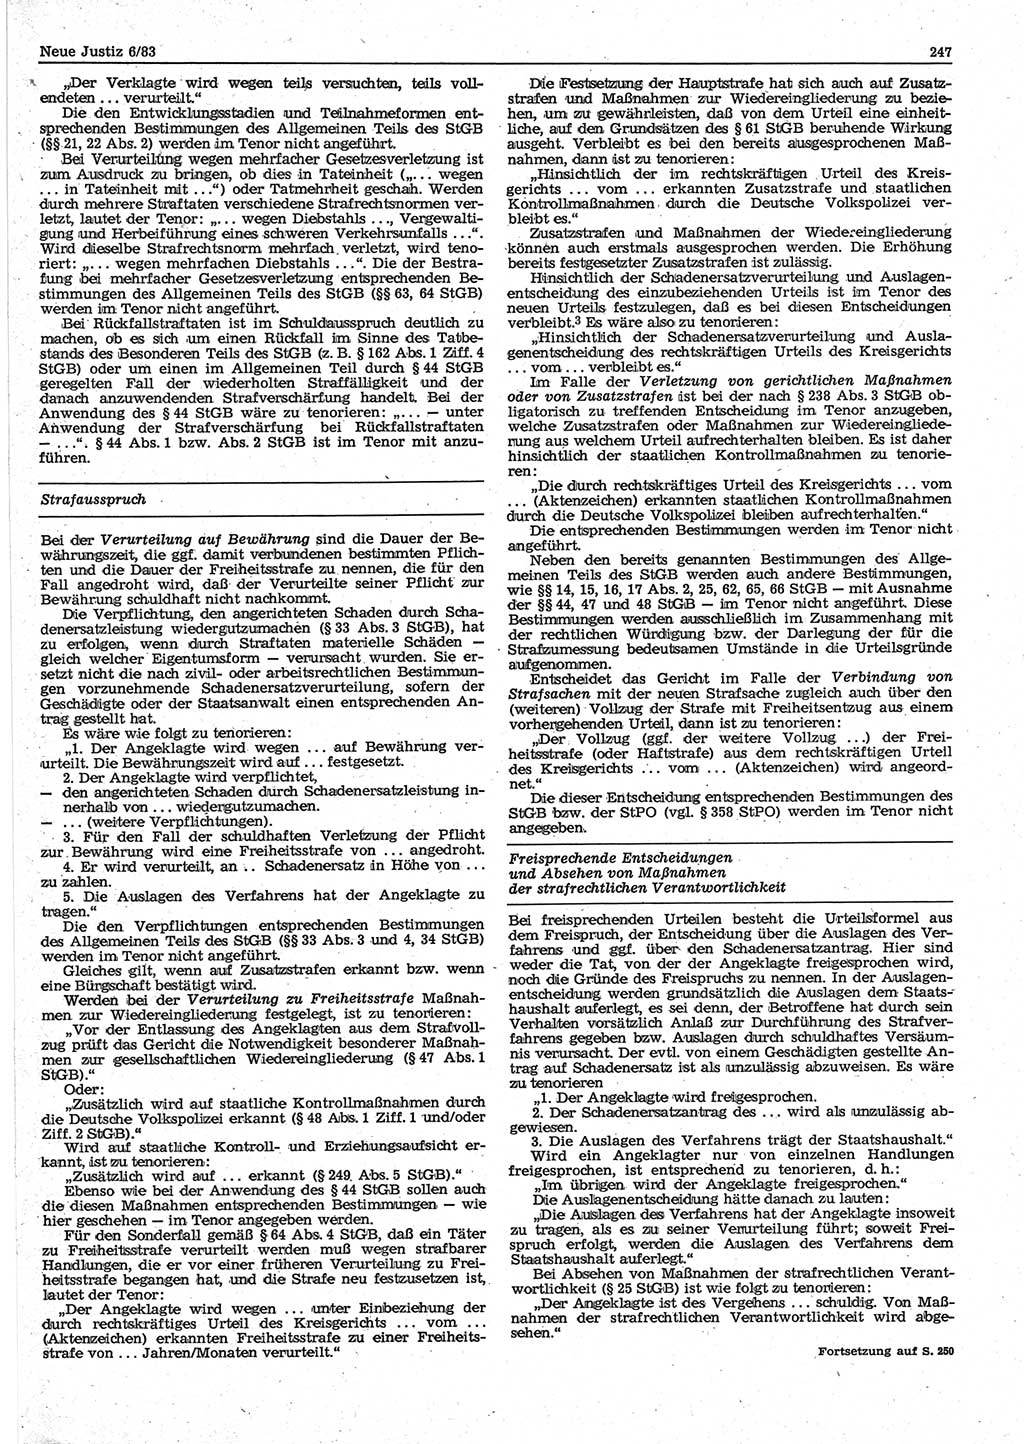 Neue Justiz (NJ), Zeitschrift für sozialistisches Recht und Gesetzlichkeit [Deutsche Demokratische Republik (DDR)], 37. Jahrgang 1983, Seite 247 (NJ DDR 1983, S. 247)